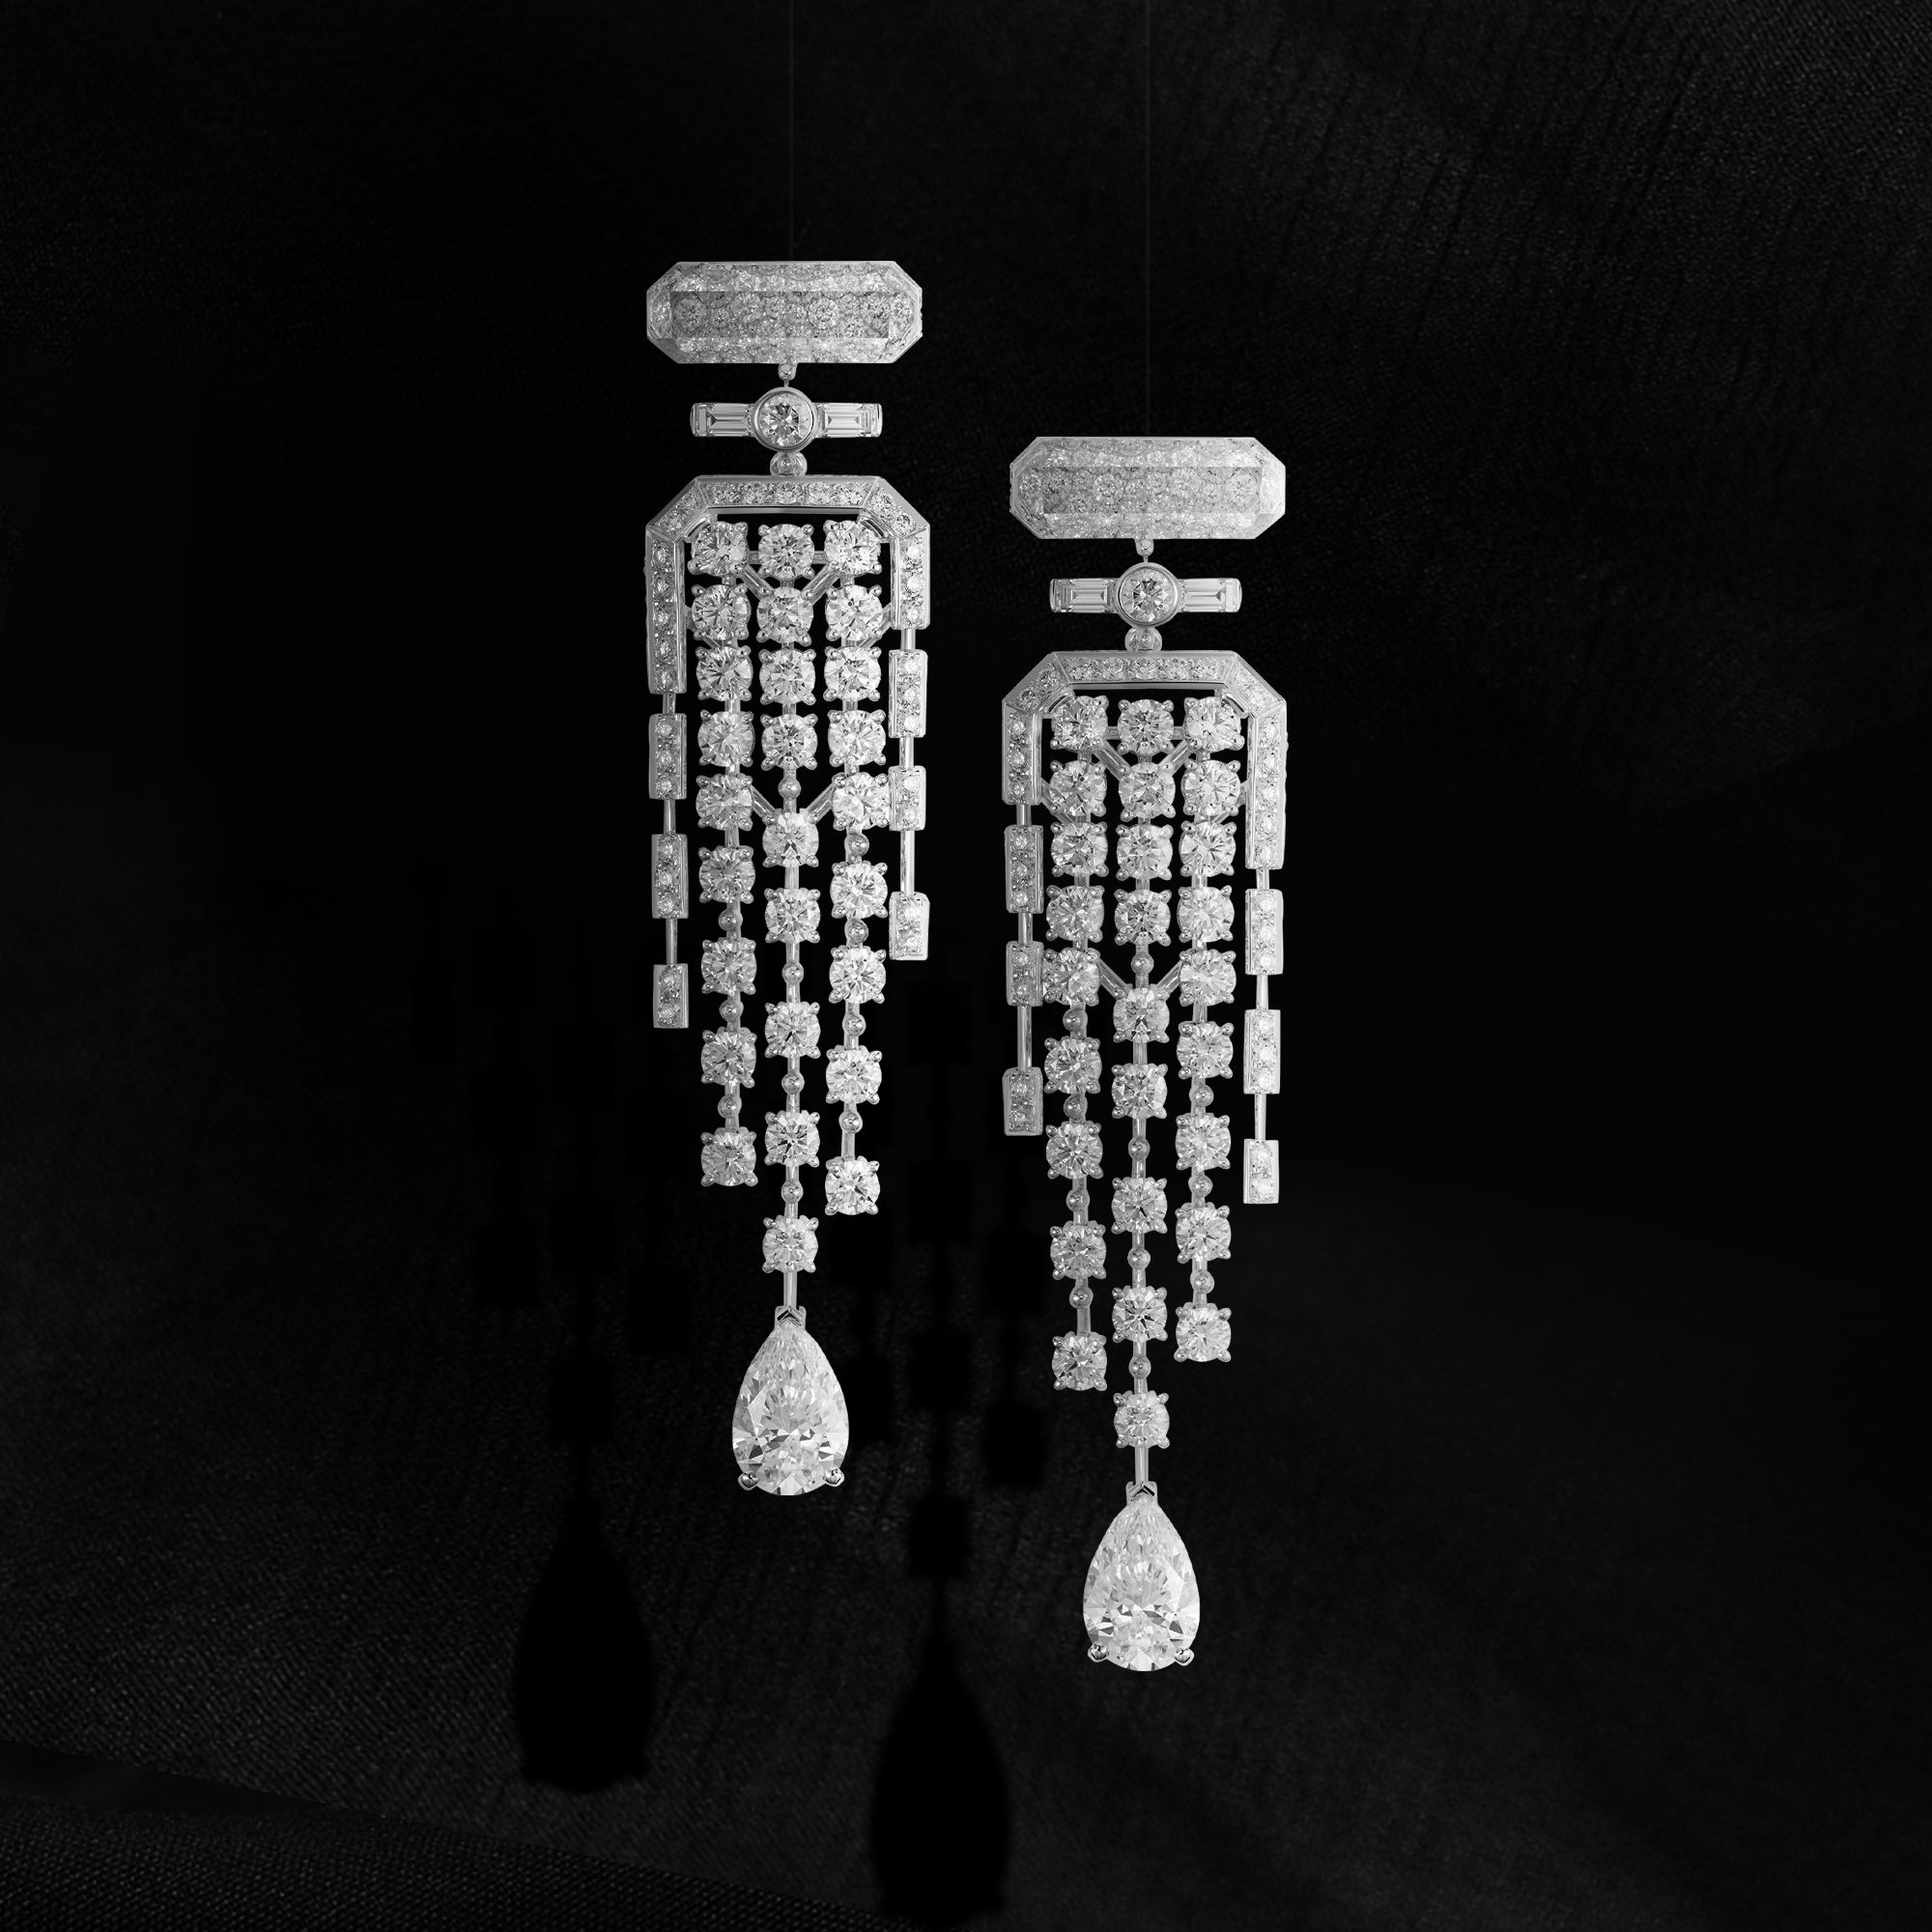 Boucles d'oreilles N°5 SIGNATURE BOTTLE en or blanc, diamants et cristal de roche. 1 diamant taille poire 1,55 ct D IF. 1 diamant taille poire 1,54 ct D IF.